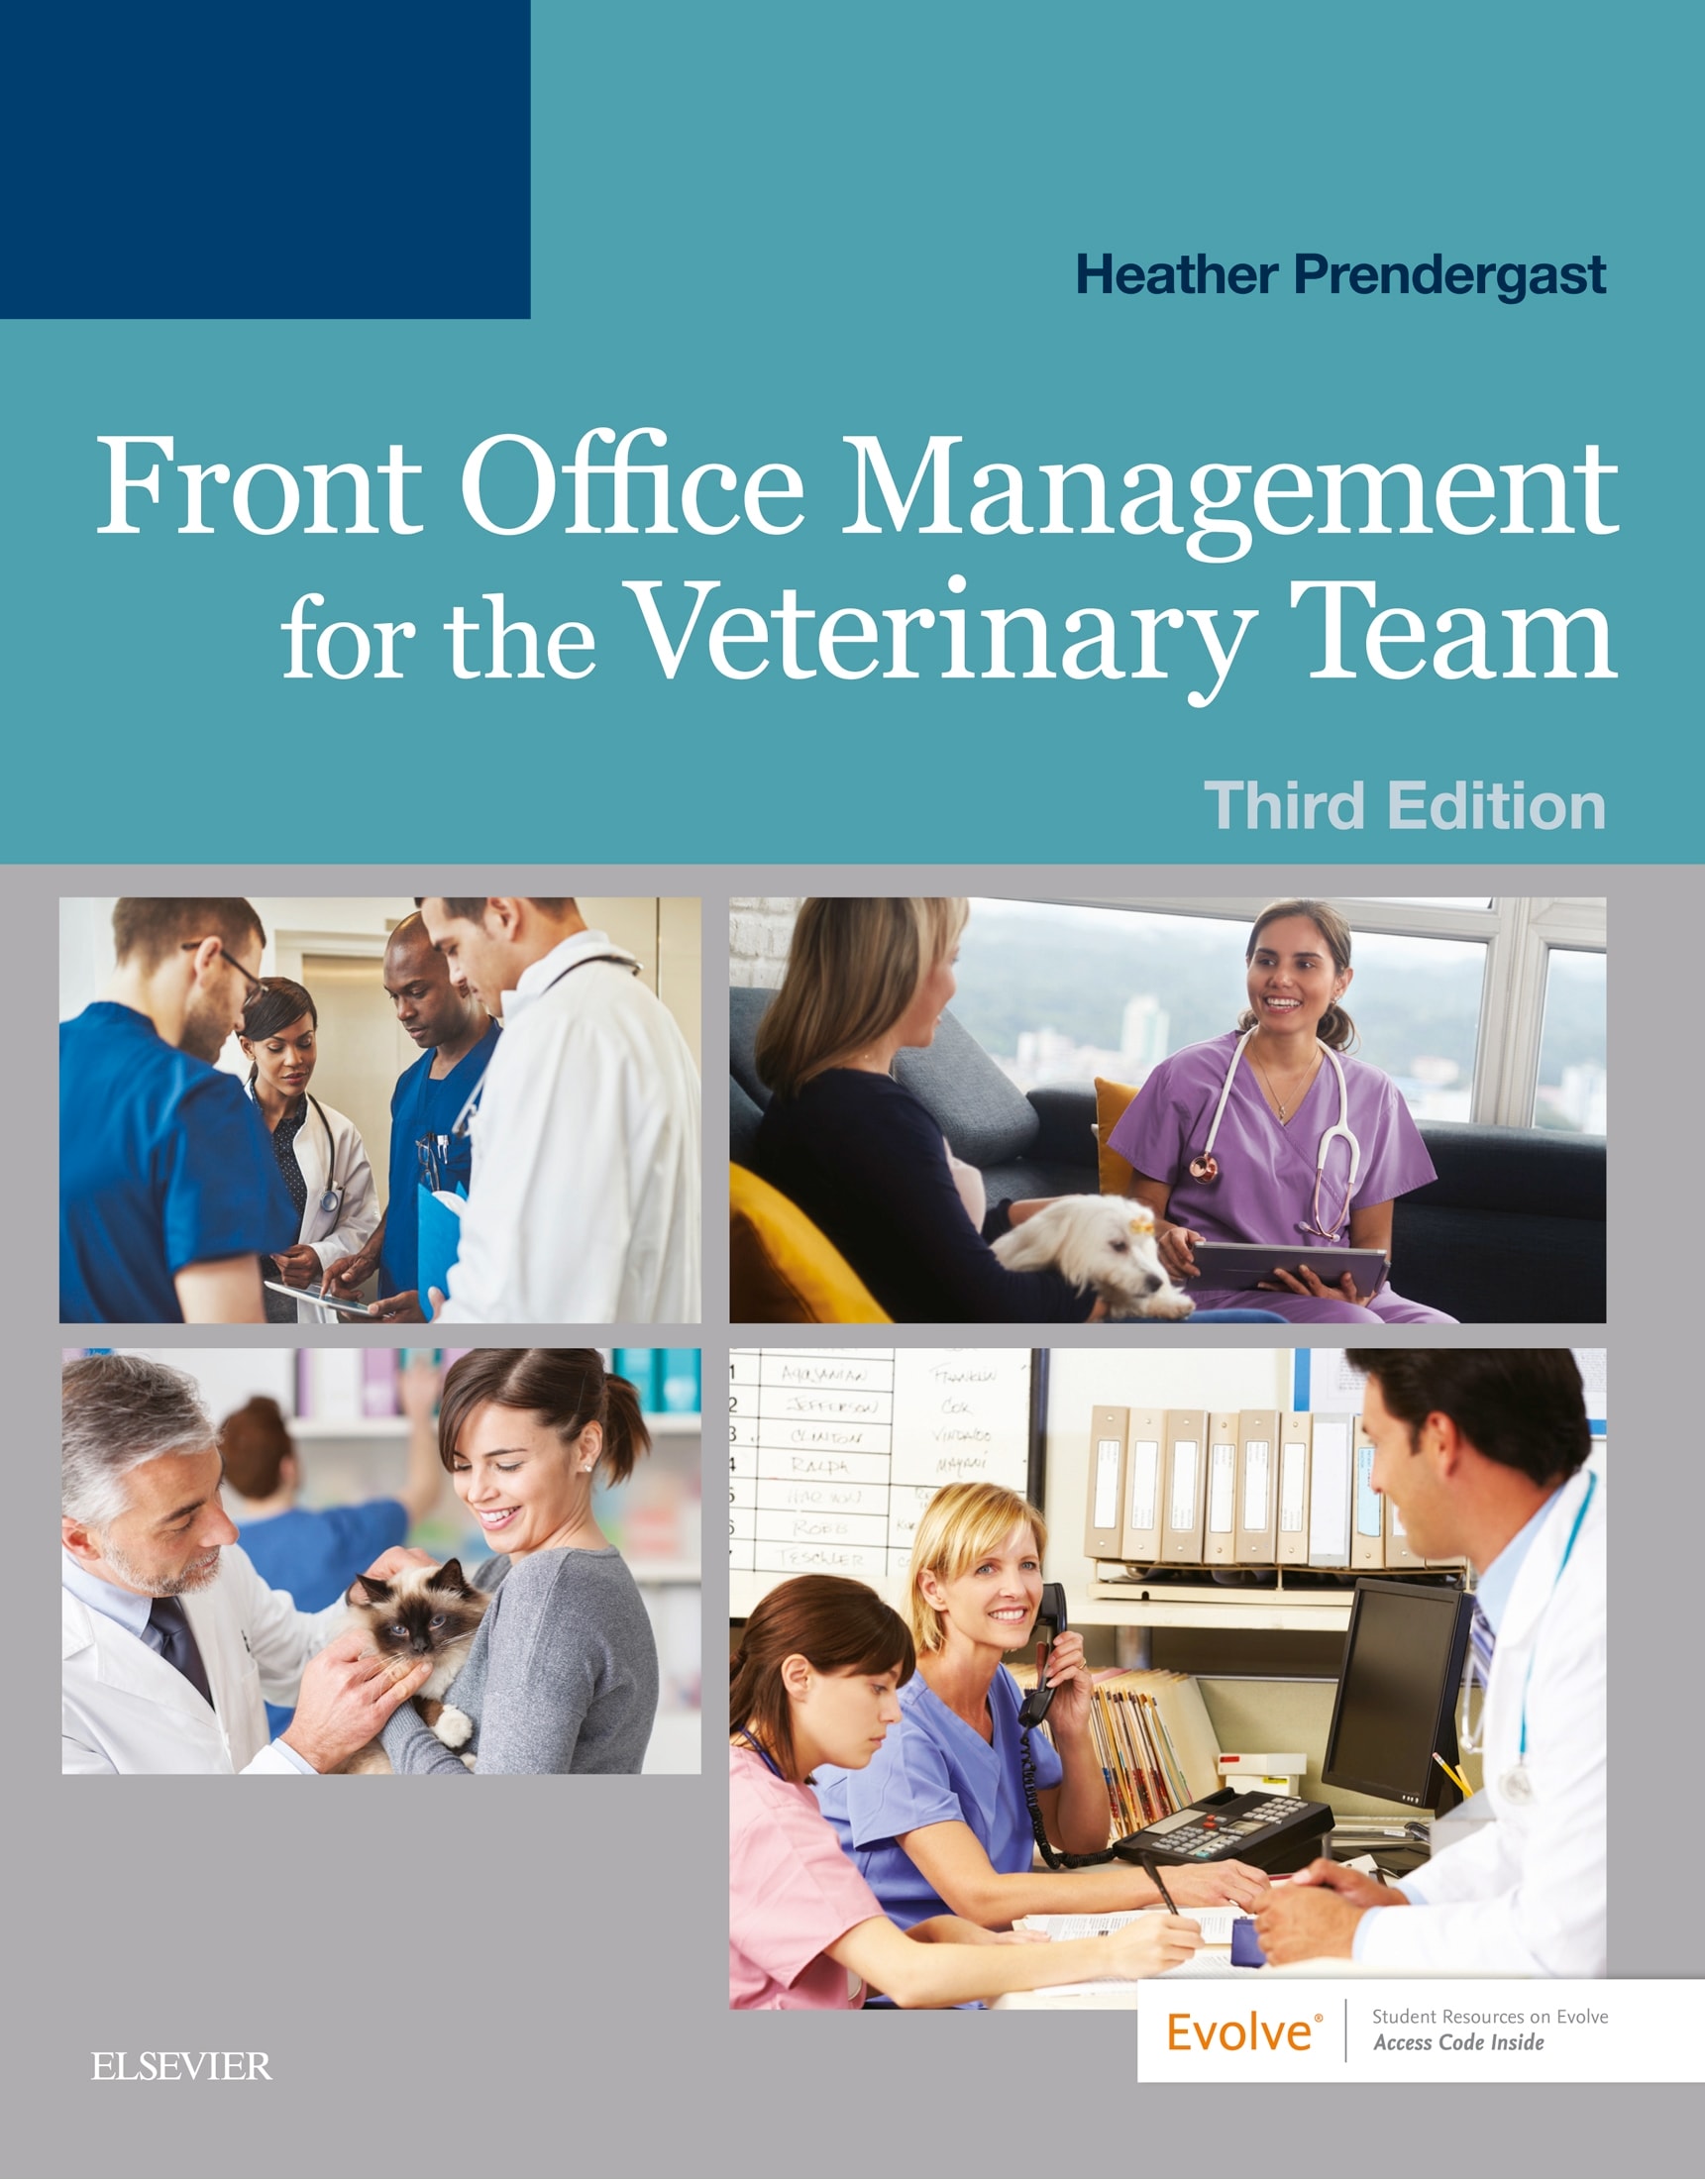 Front Office Management For Vet team